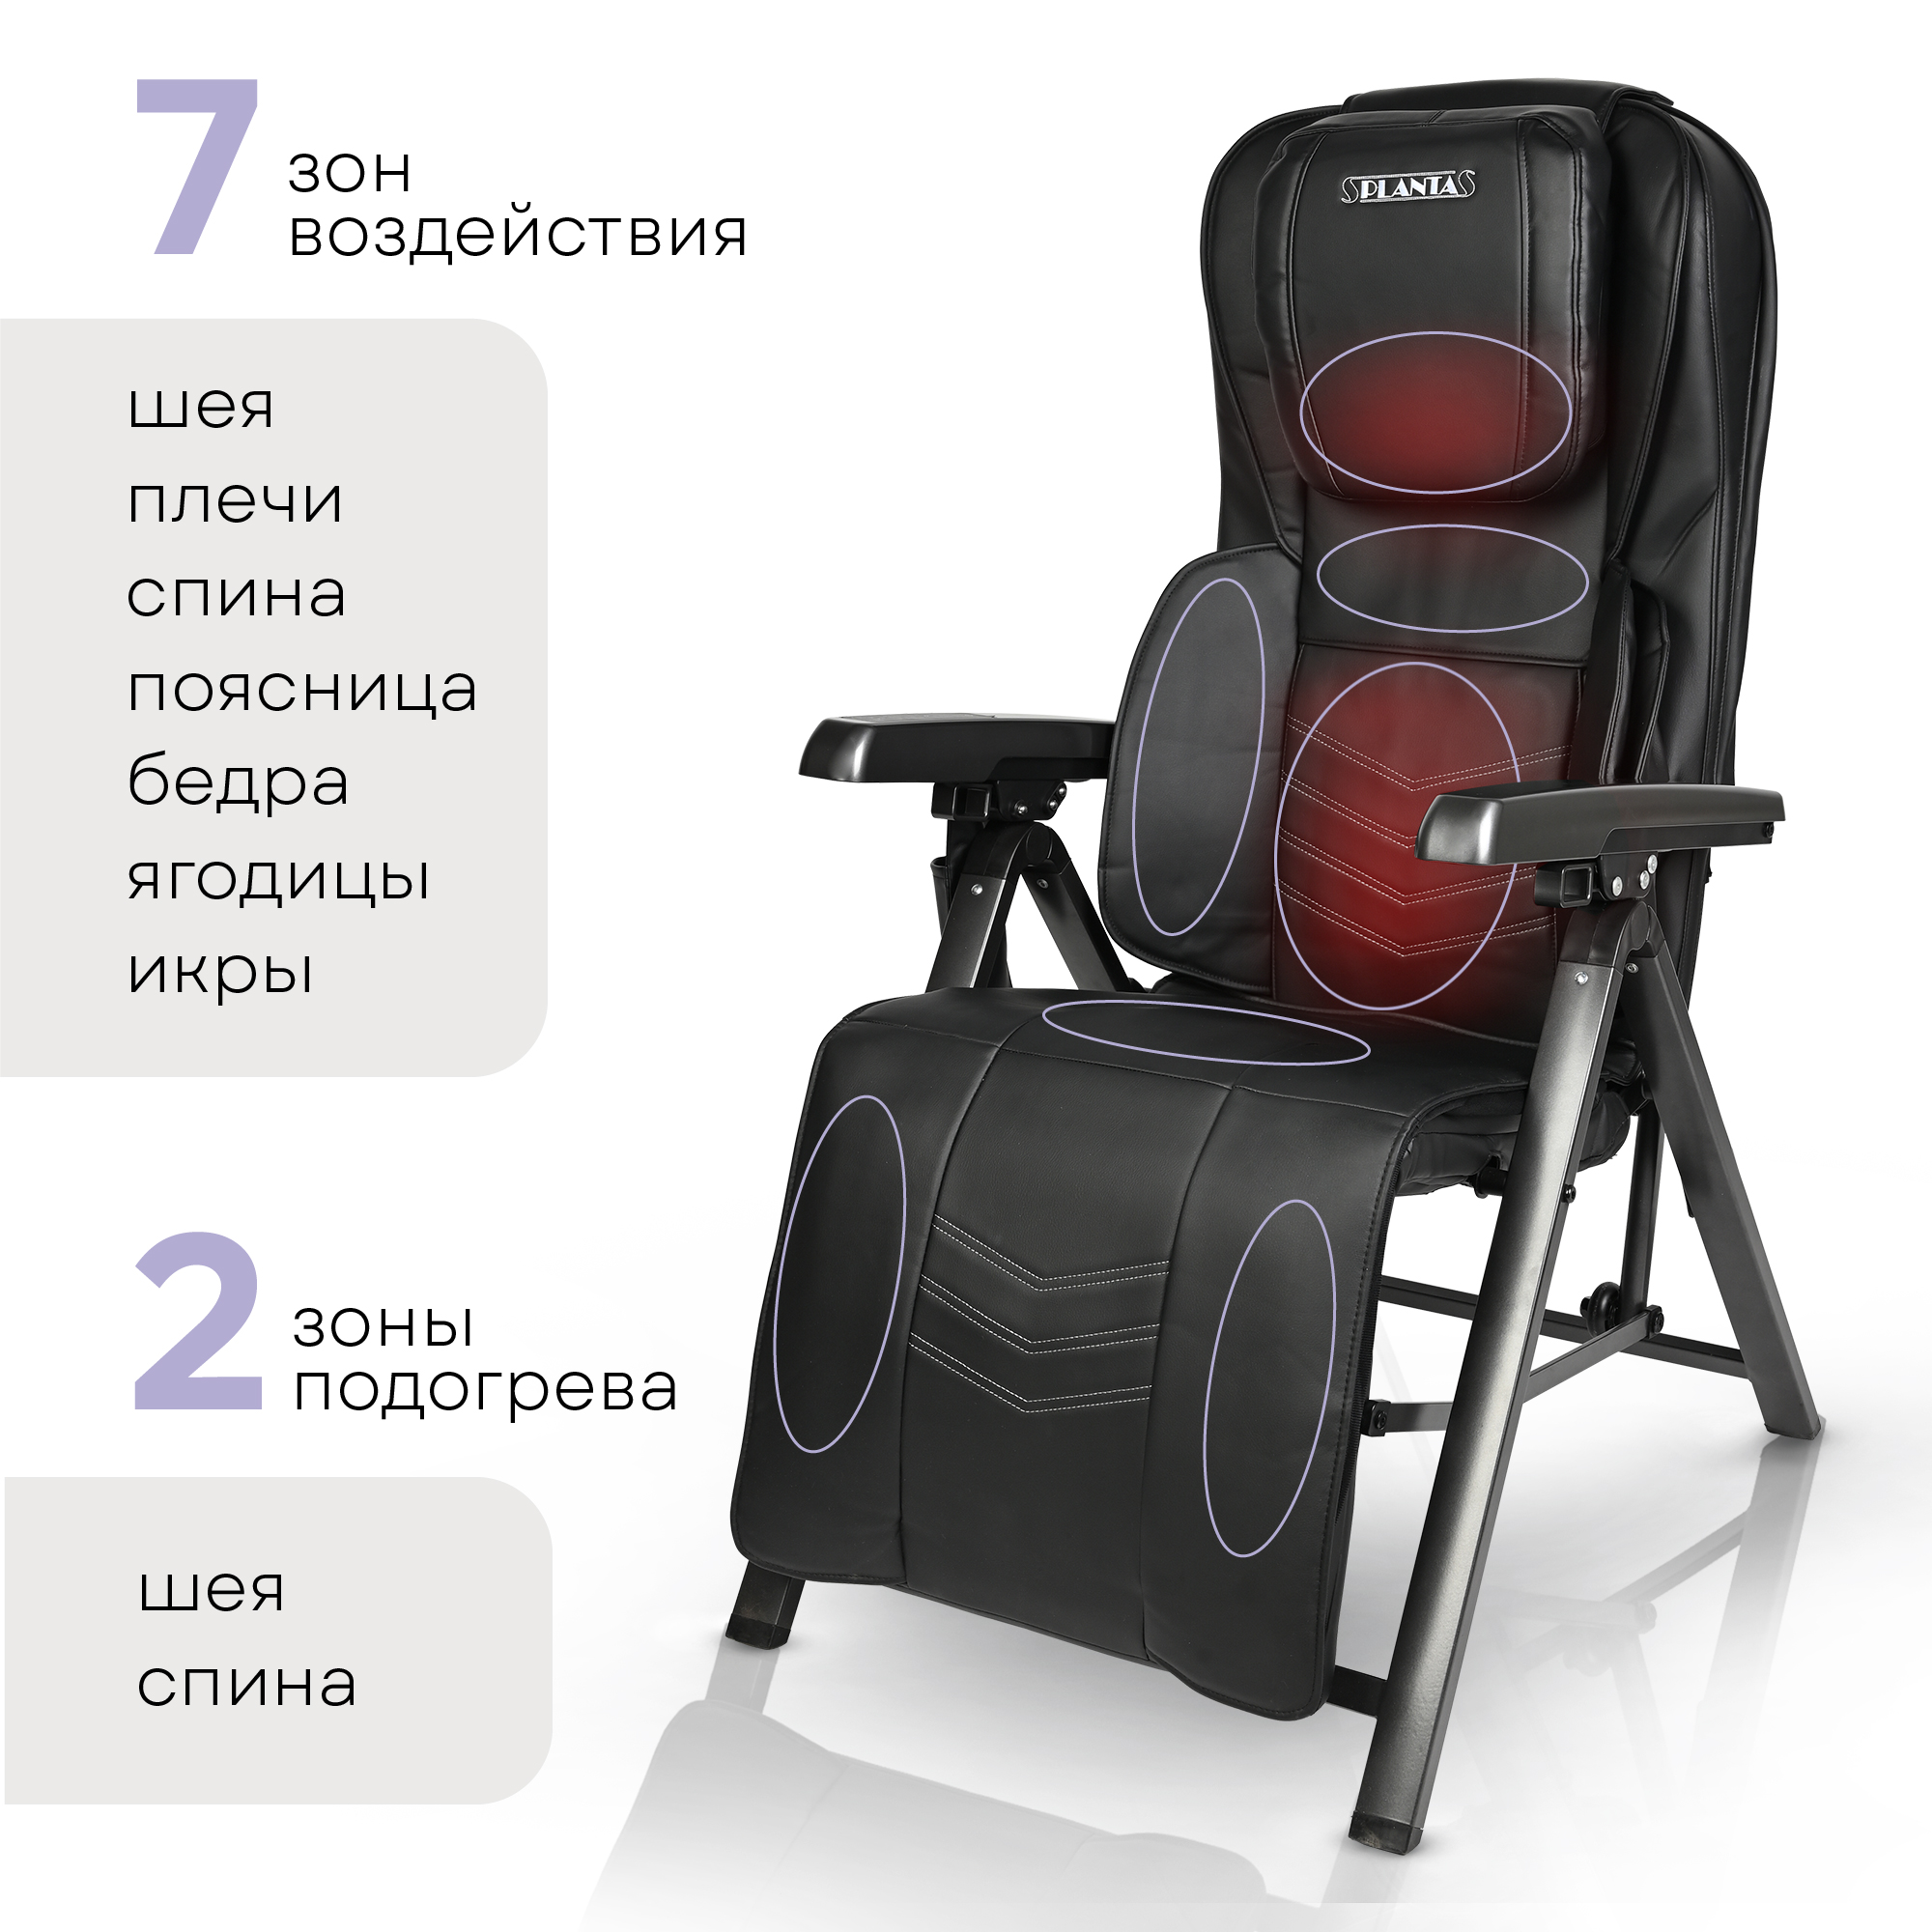 Складное массажное кресло Planta шезлонг 2 в 1 MC-2500 с подогревом - фото 3